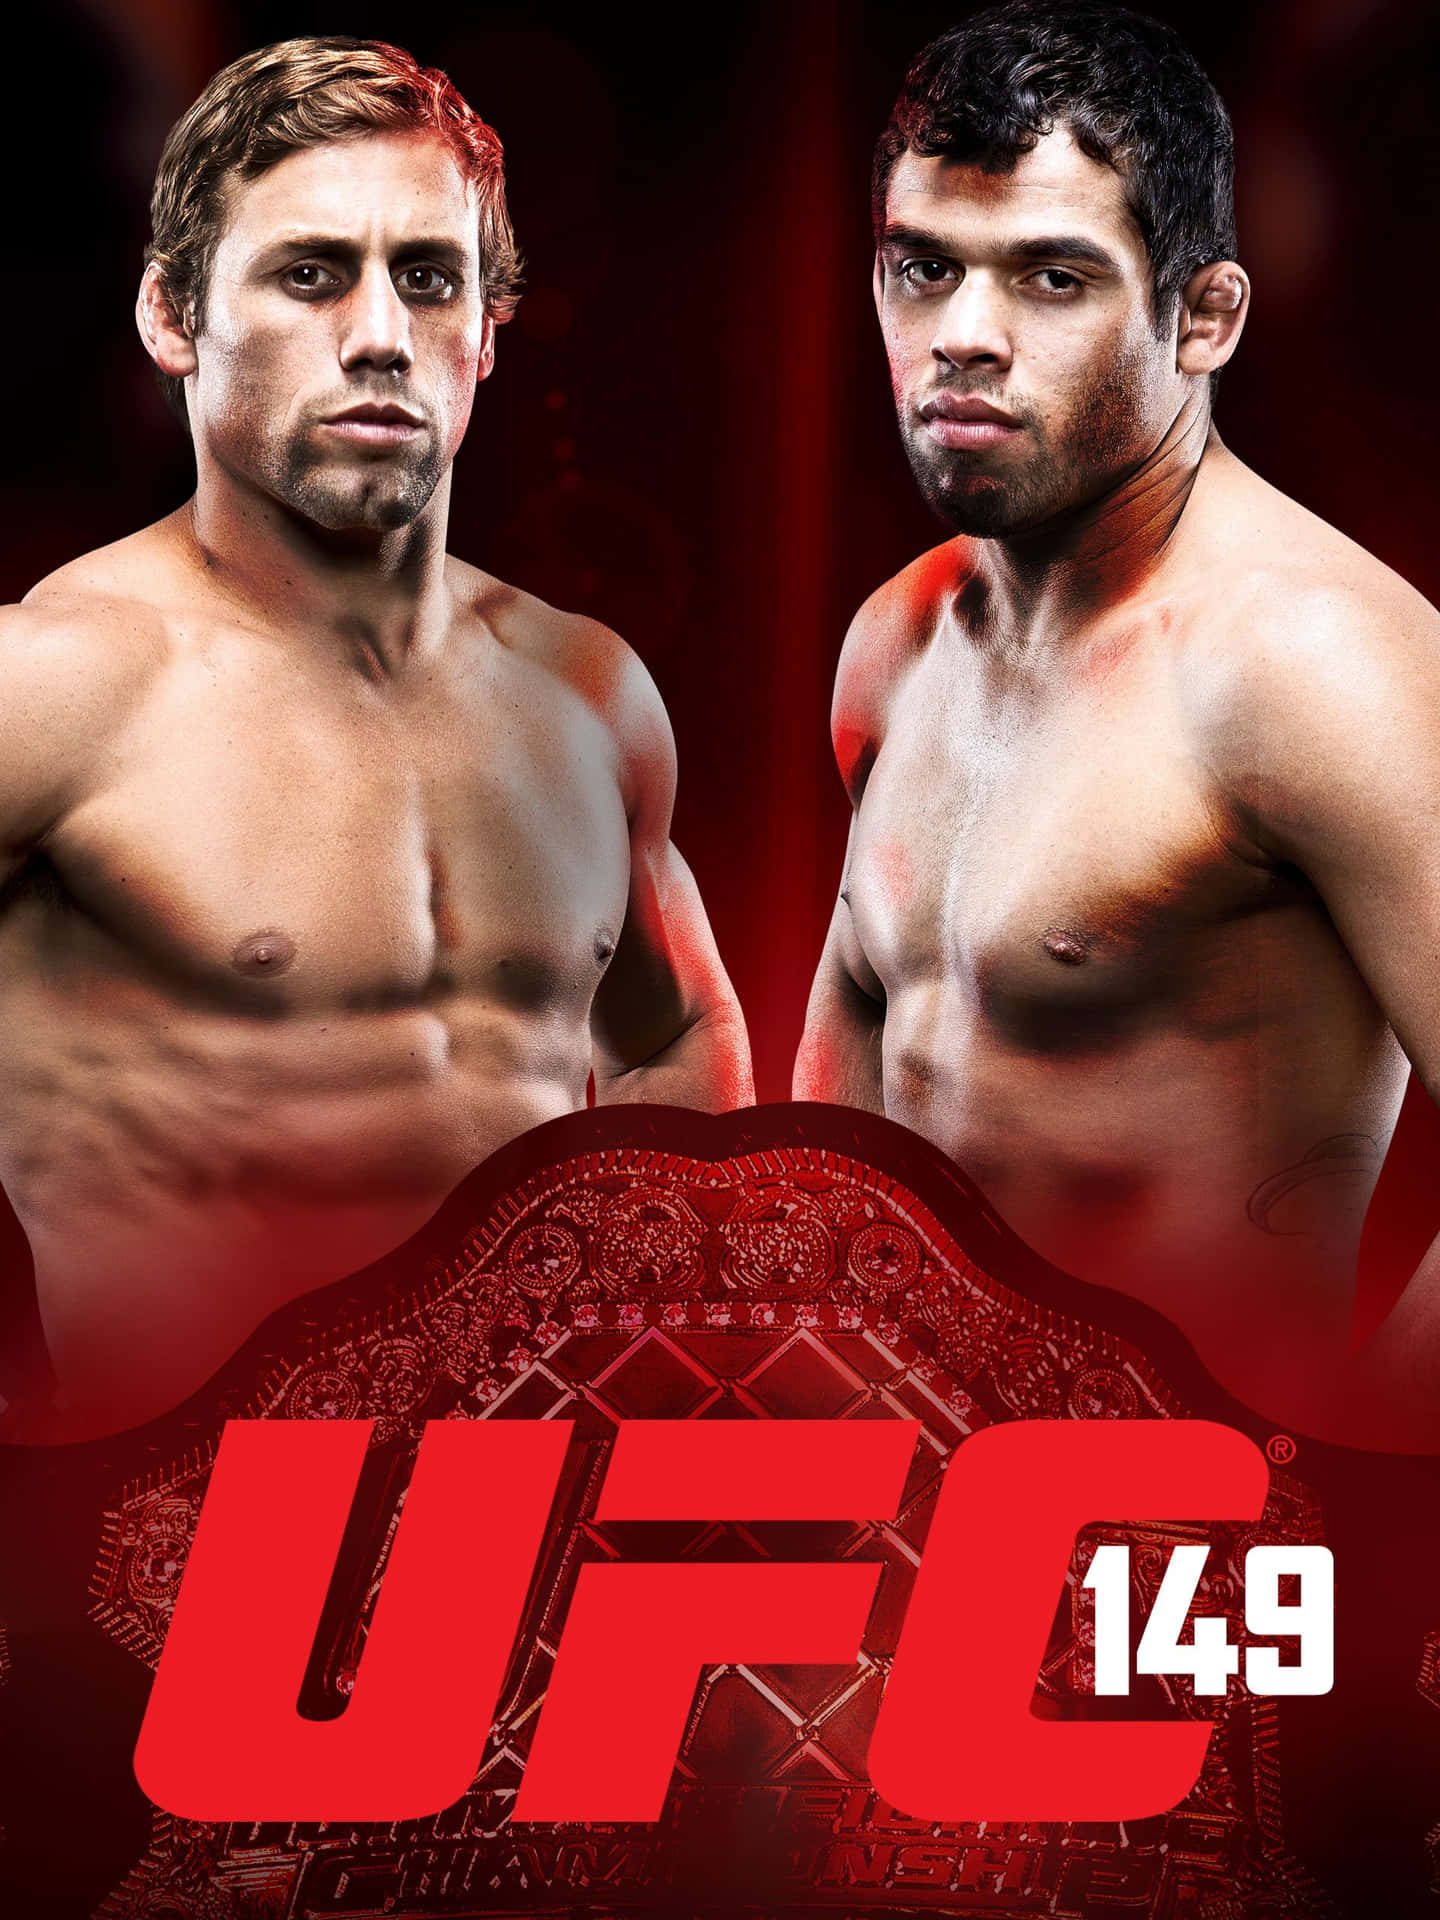 Renan Barão og Faber UFC 149 plakat som tapet på din computer. Wallpaper